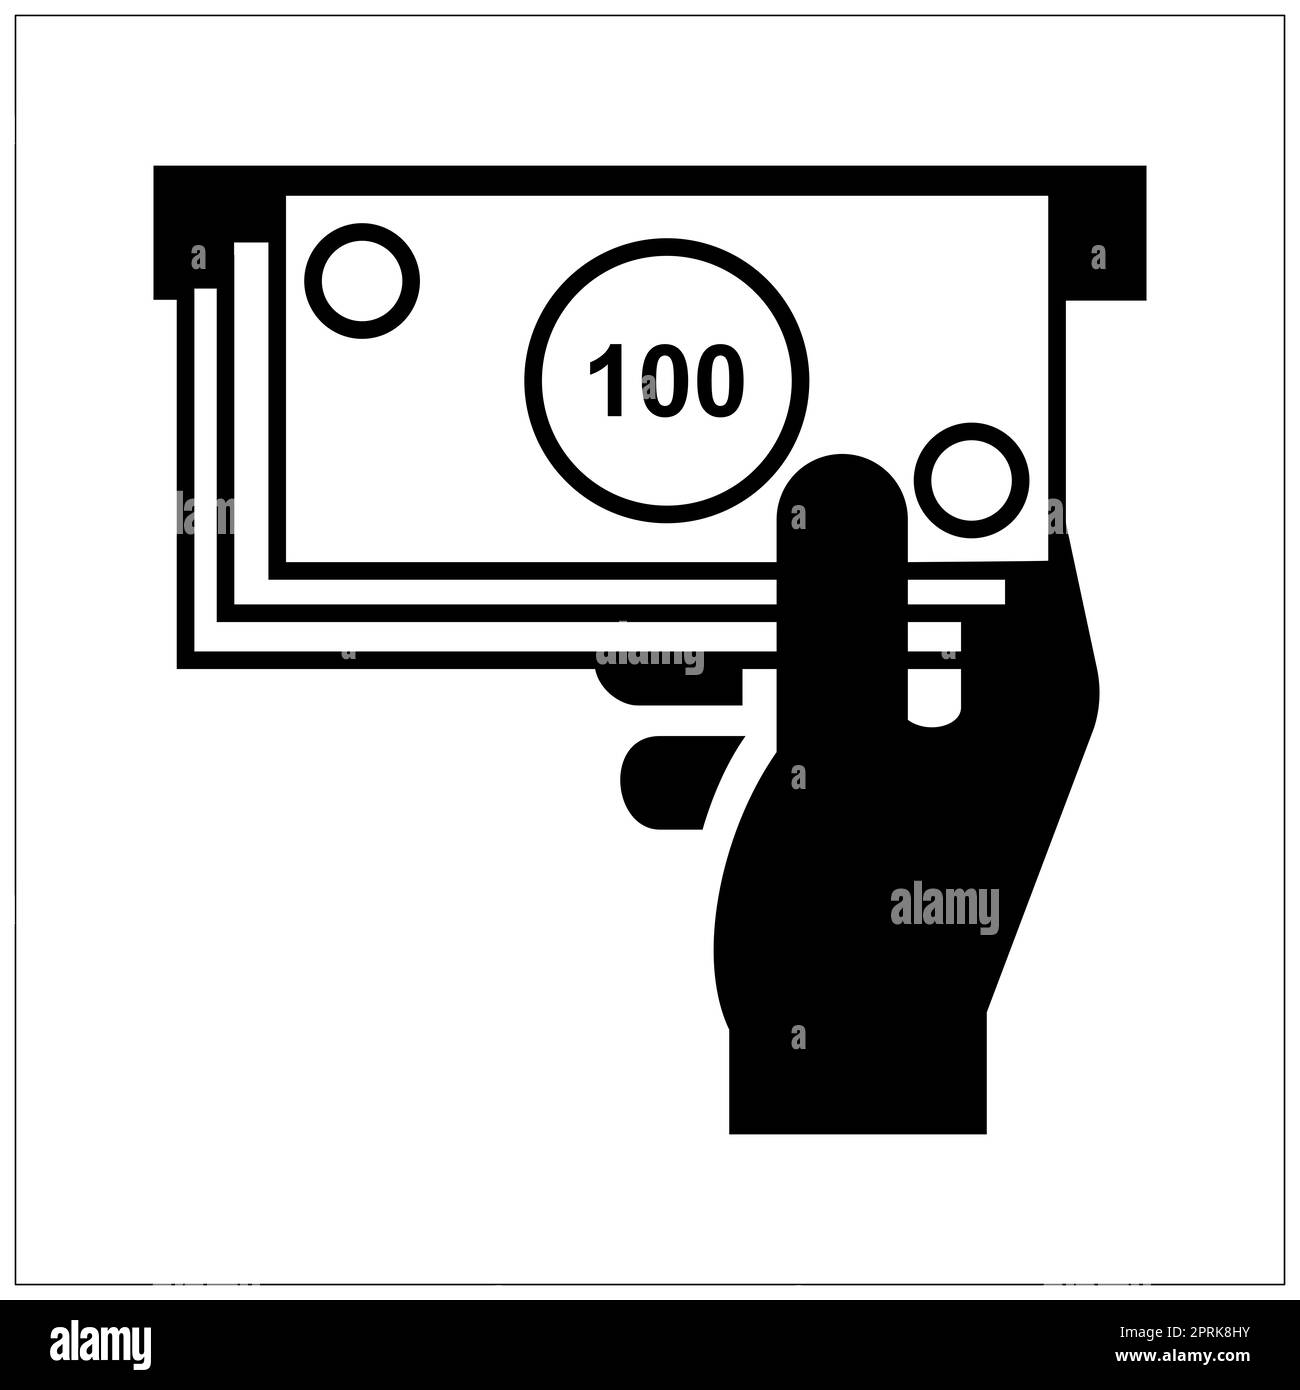 ISO 7001 cash dispenser sign Stock Photo